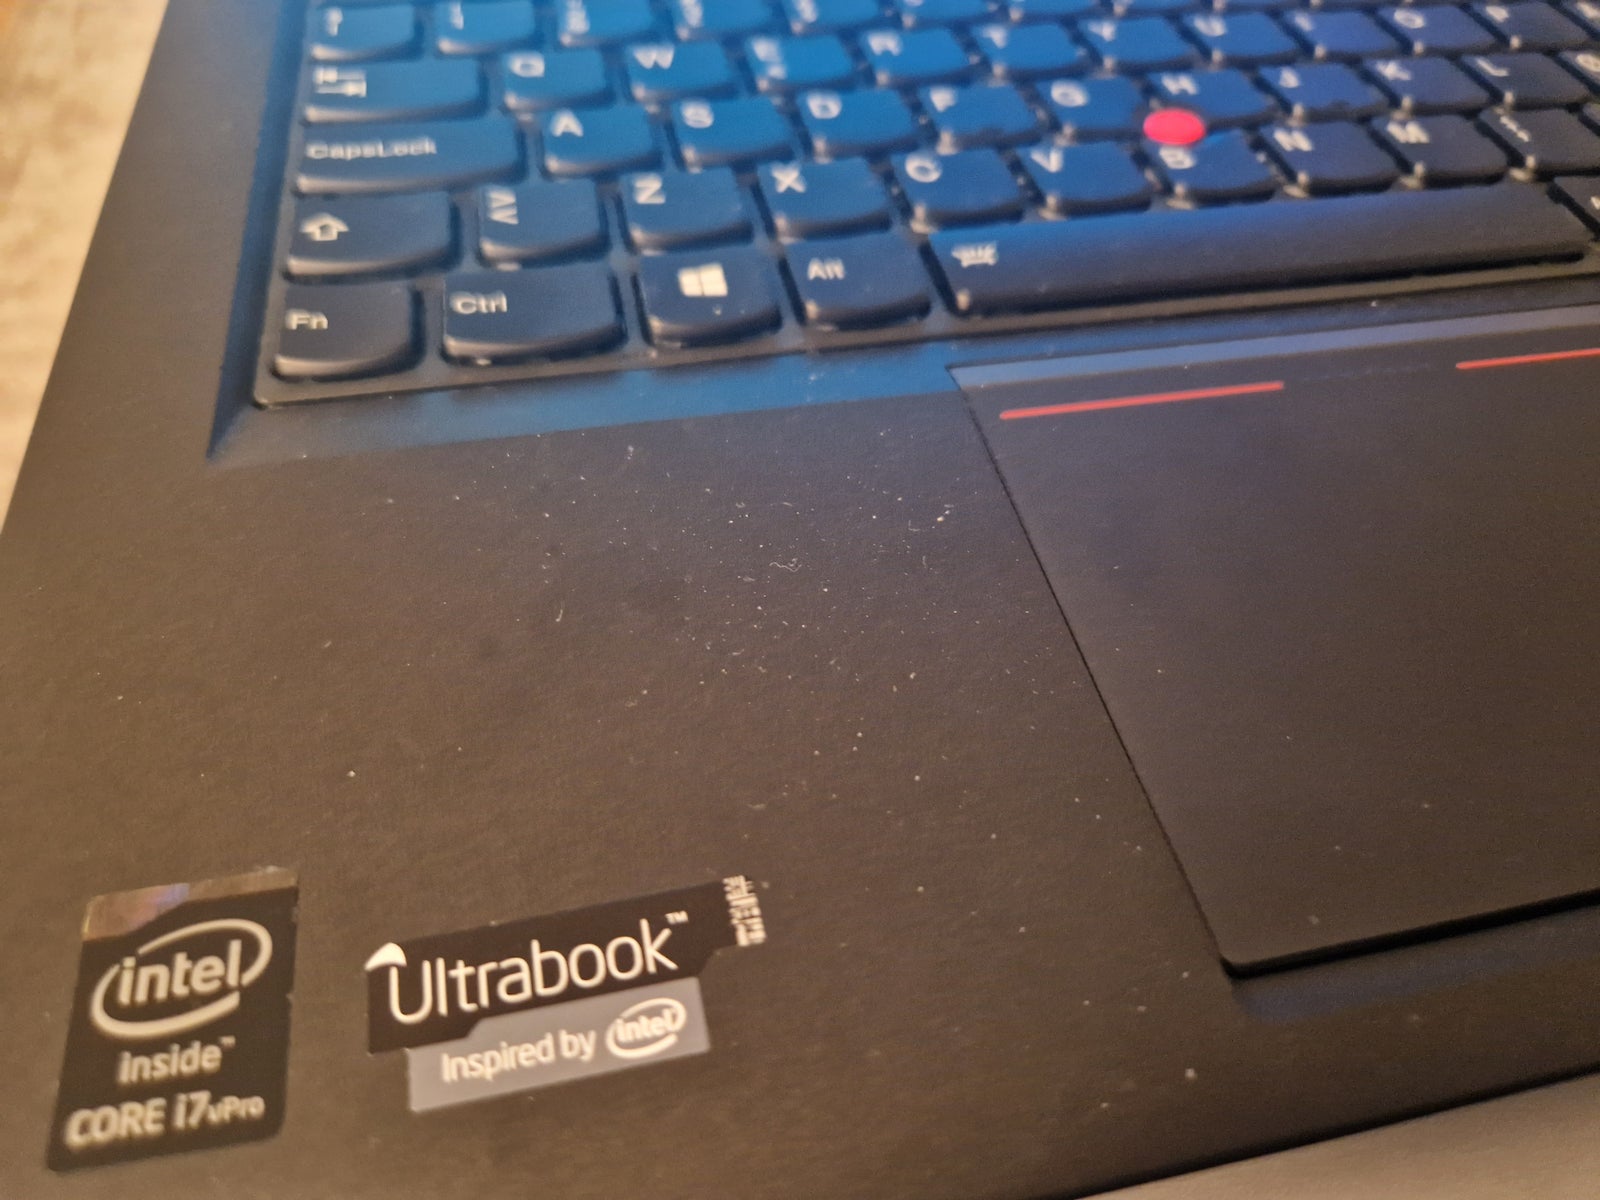 Lenovo Thinkpad ultrabook, I7vpro 2.10 2.69Ghz GHz, 8 GB